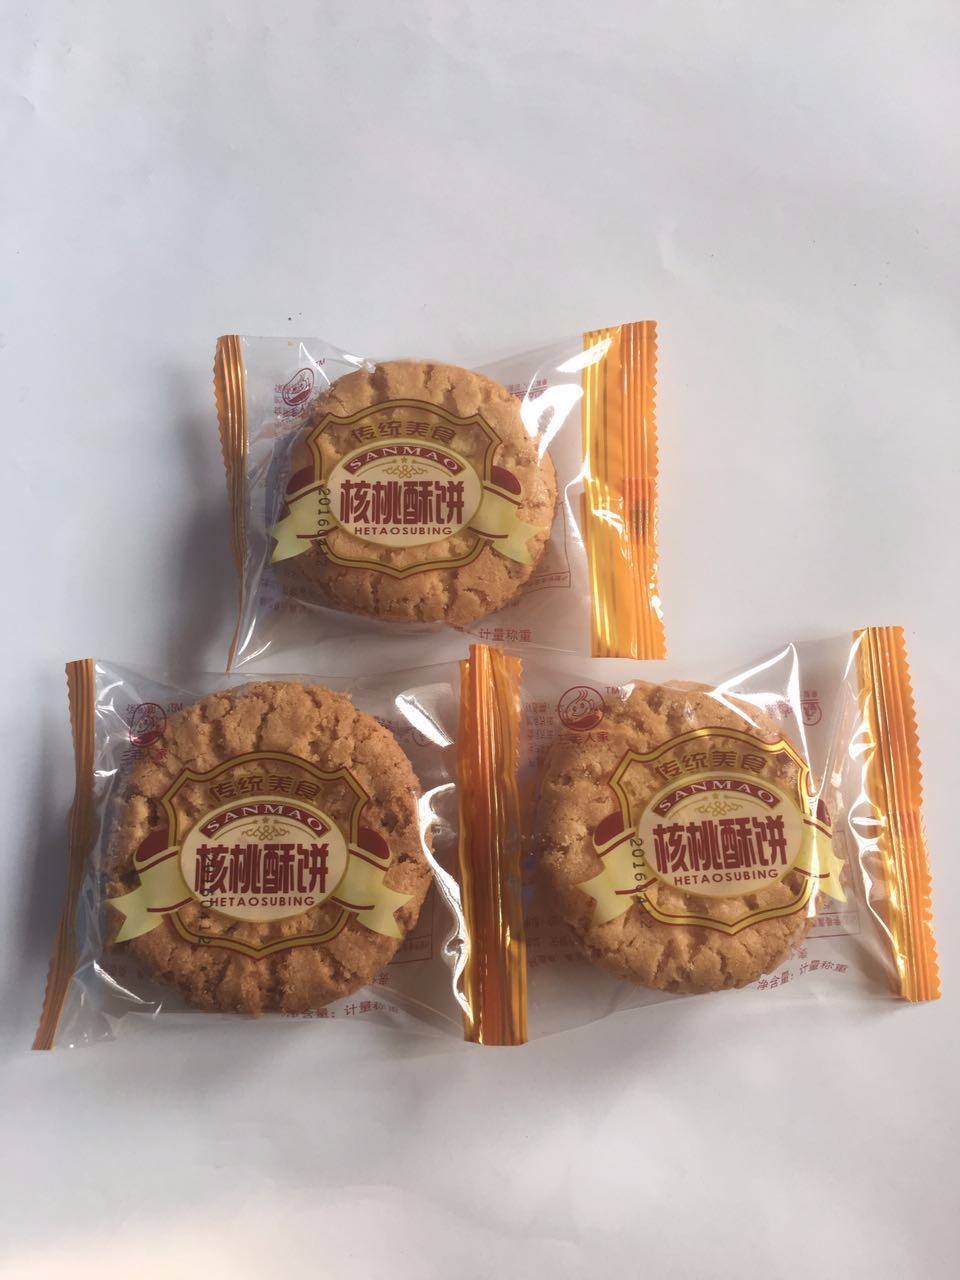 安徽省烔炀特产 核桃酥饼